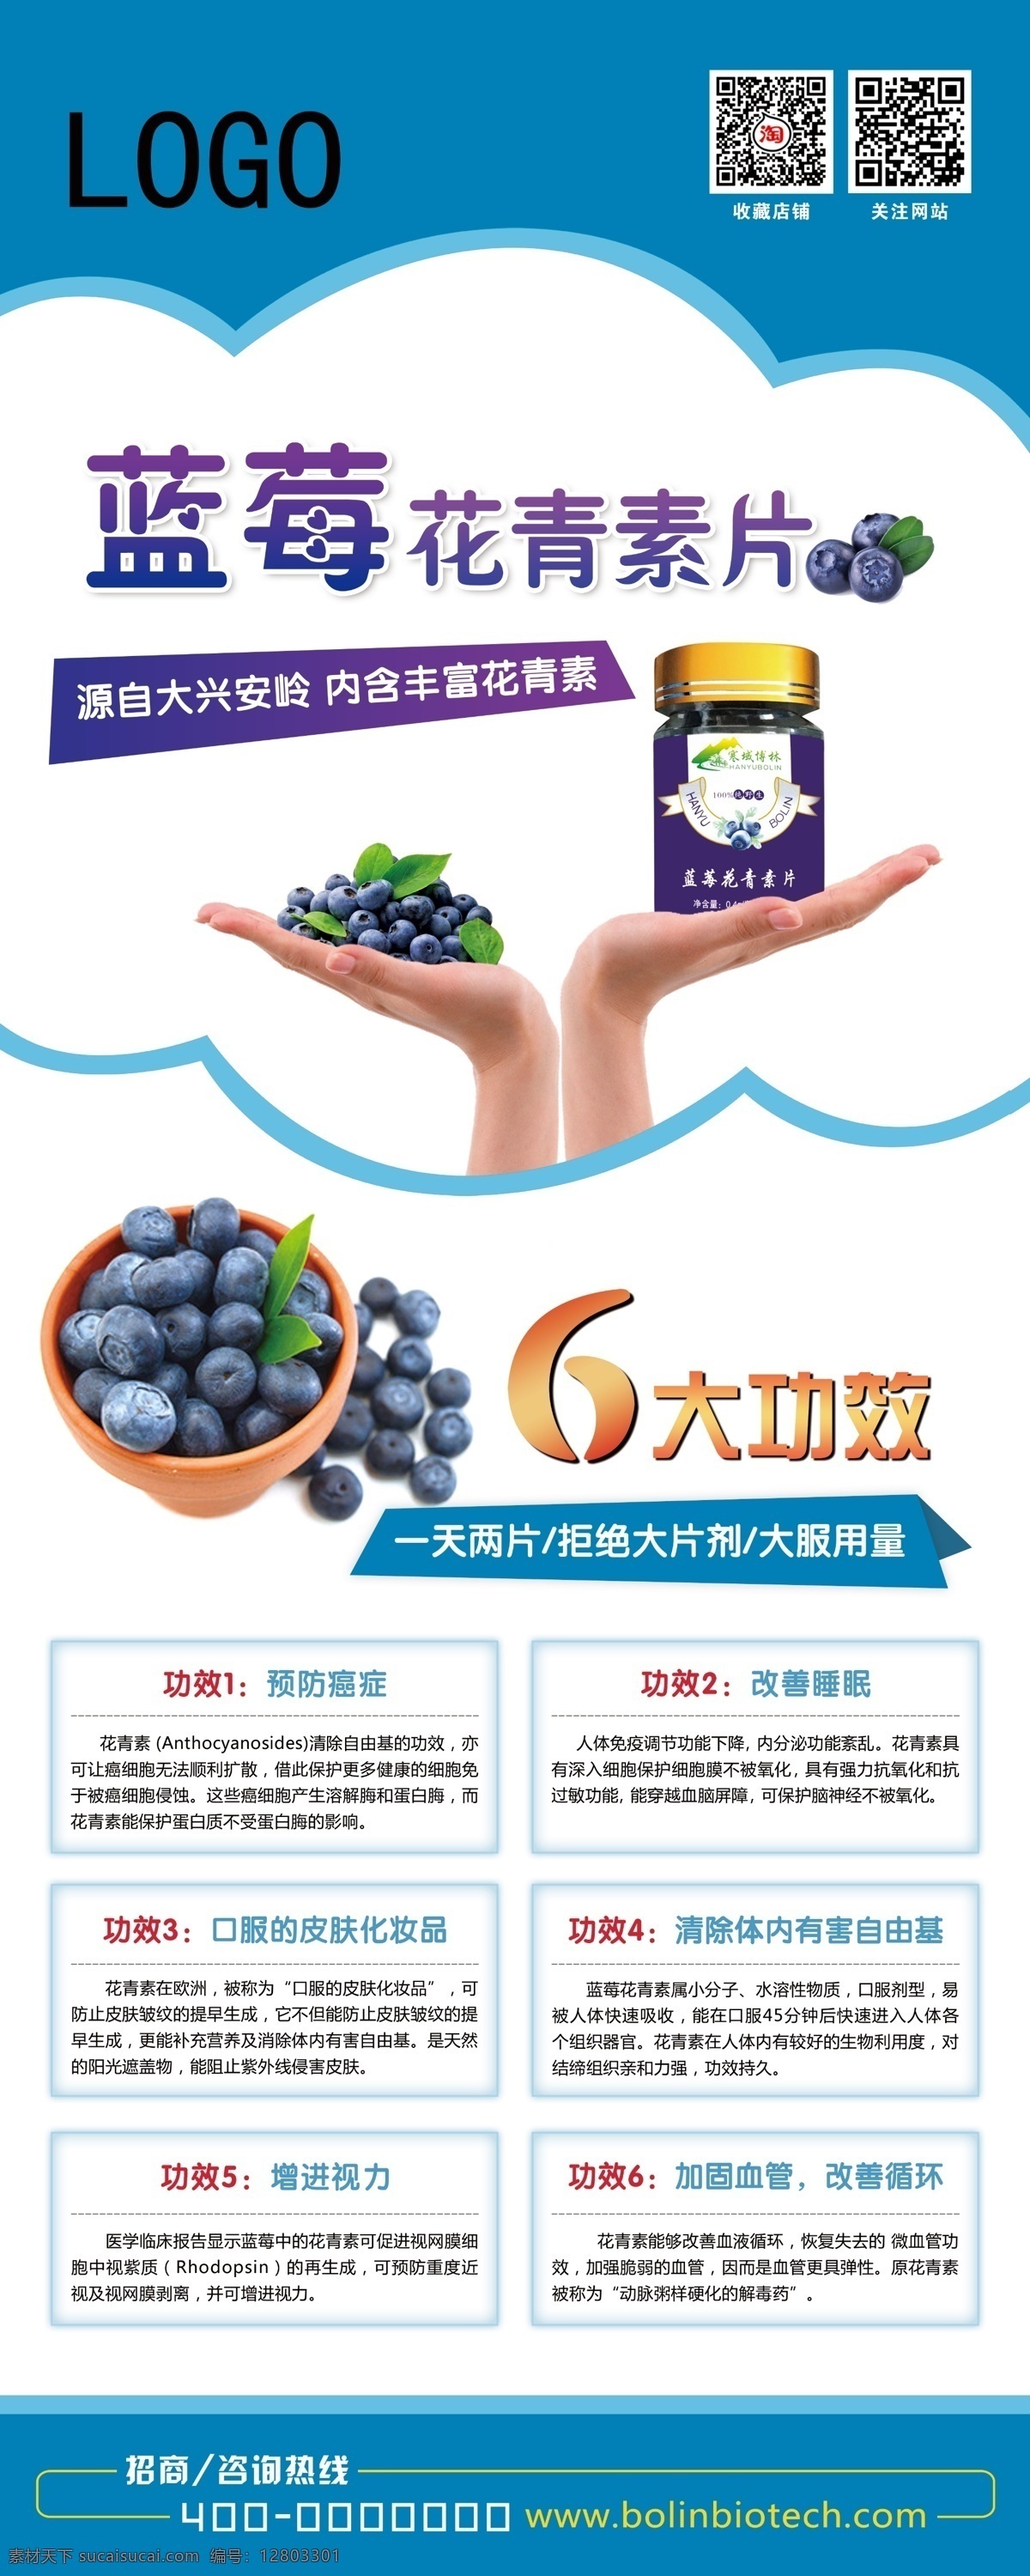 蓝莓广告宣传 蓝莓 易拉宝 广告 宣传 展板 招贴设计